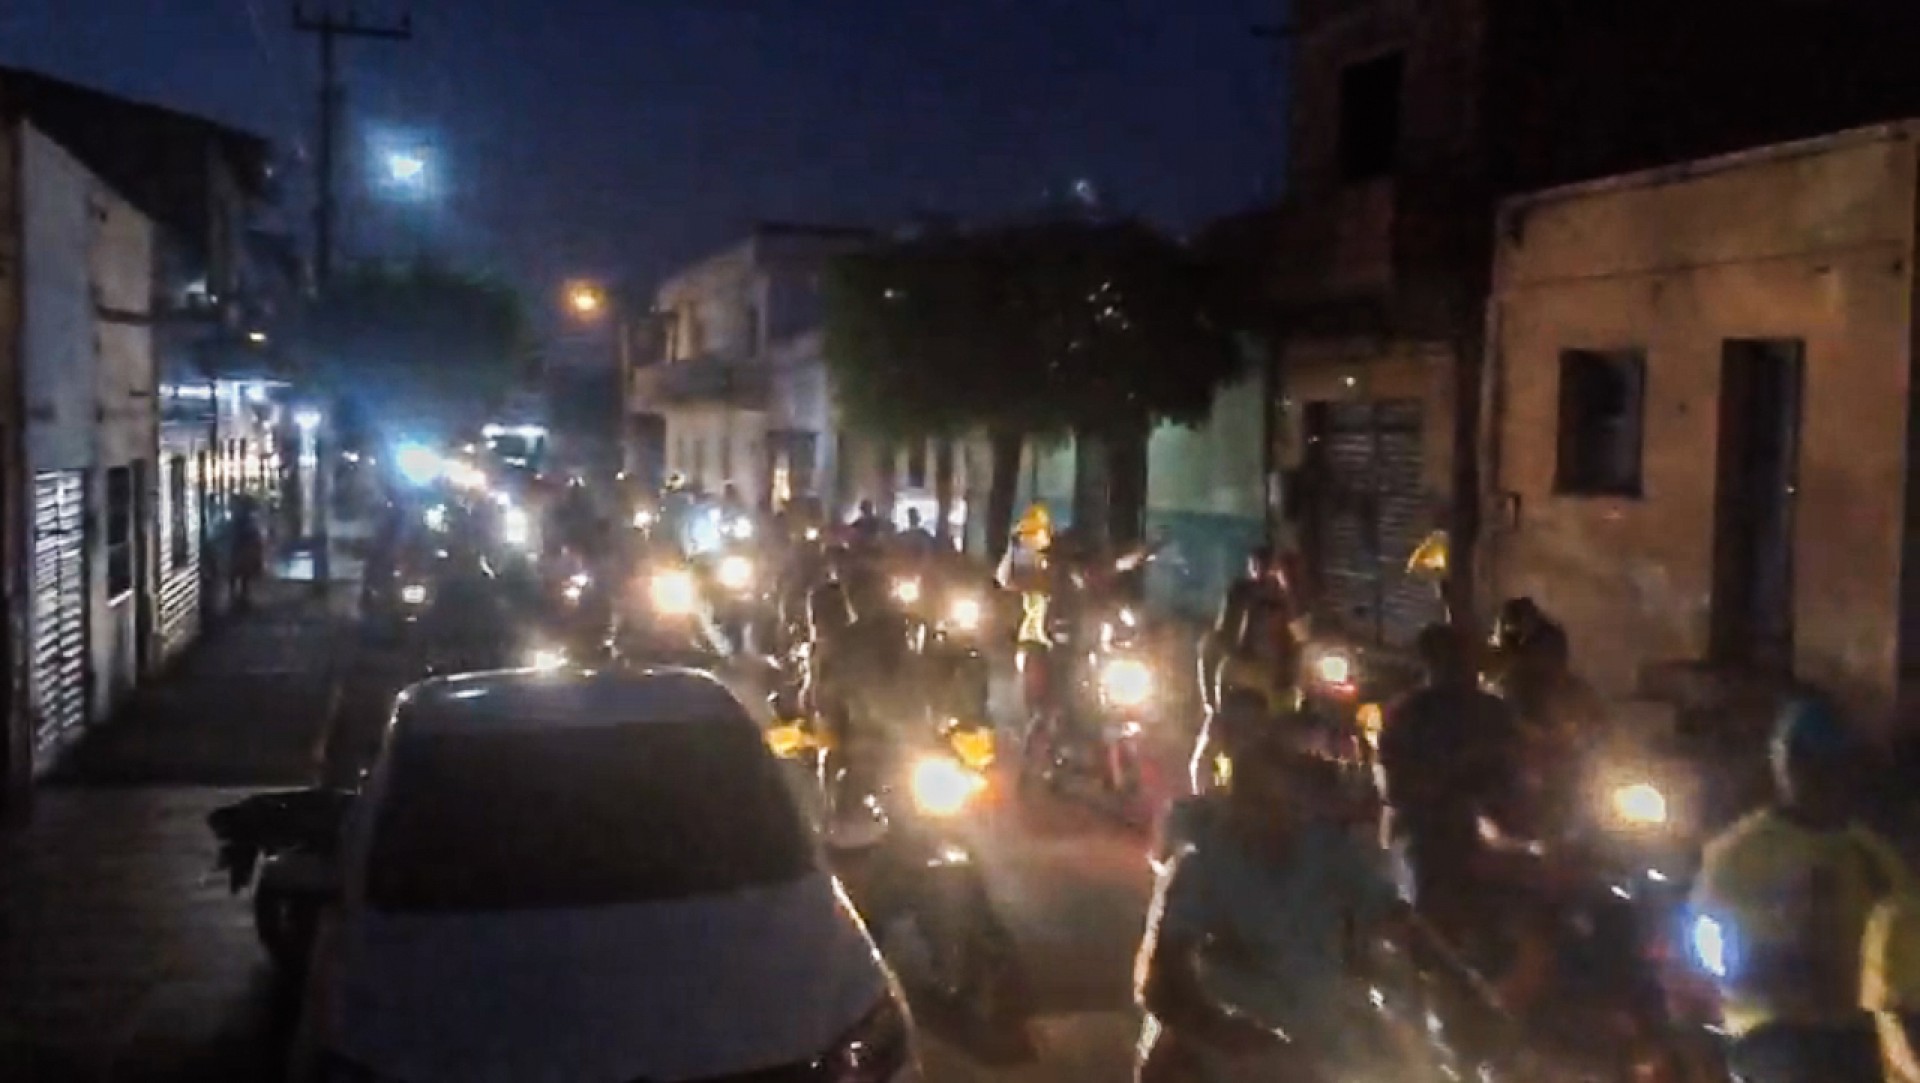 Imagem reproducao de flagrante em vídeo de  manifestação política de moto em Morrinhos. (Foto Reproducao) (Foto: Reprodução)